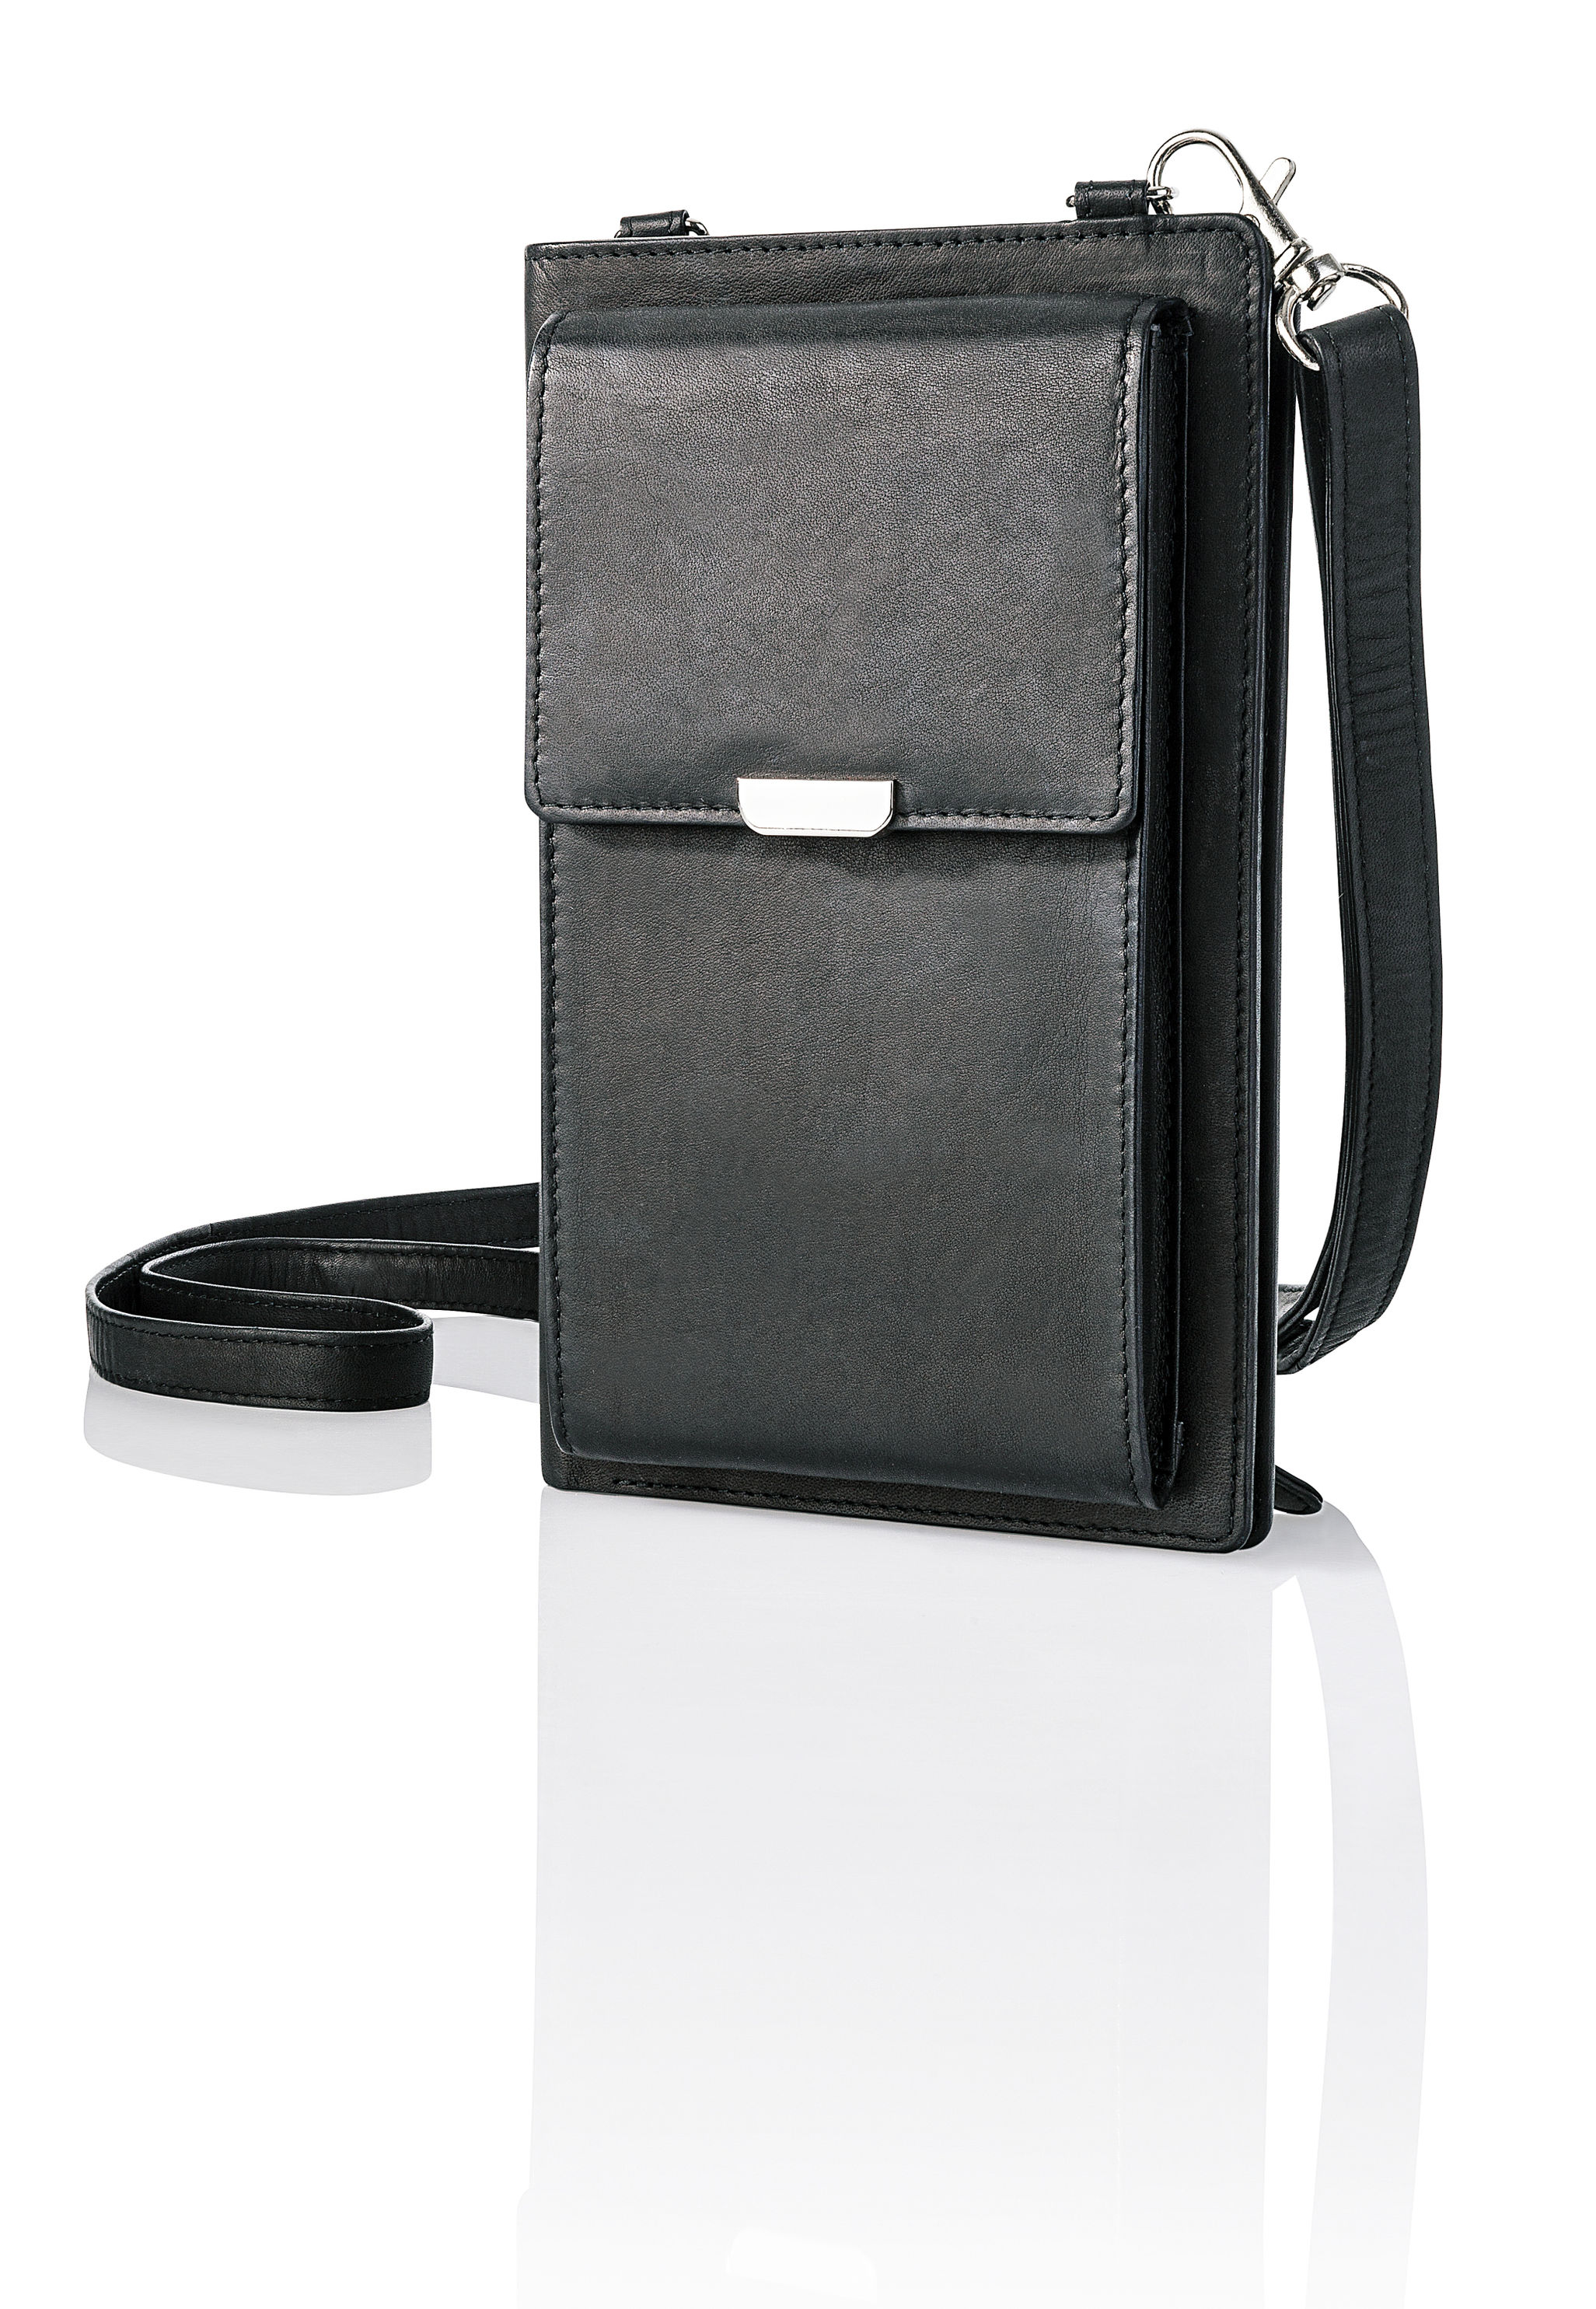 Handy-Umhängetasche mit Kartenfächern, Leder Farbe: schwarz | Weltbild.ch